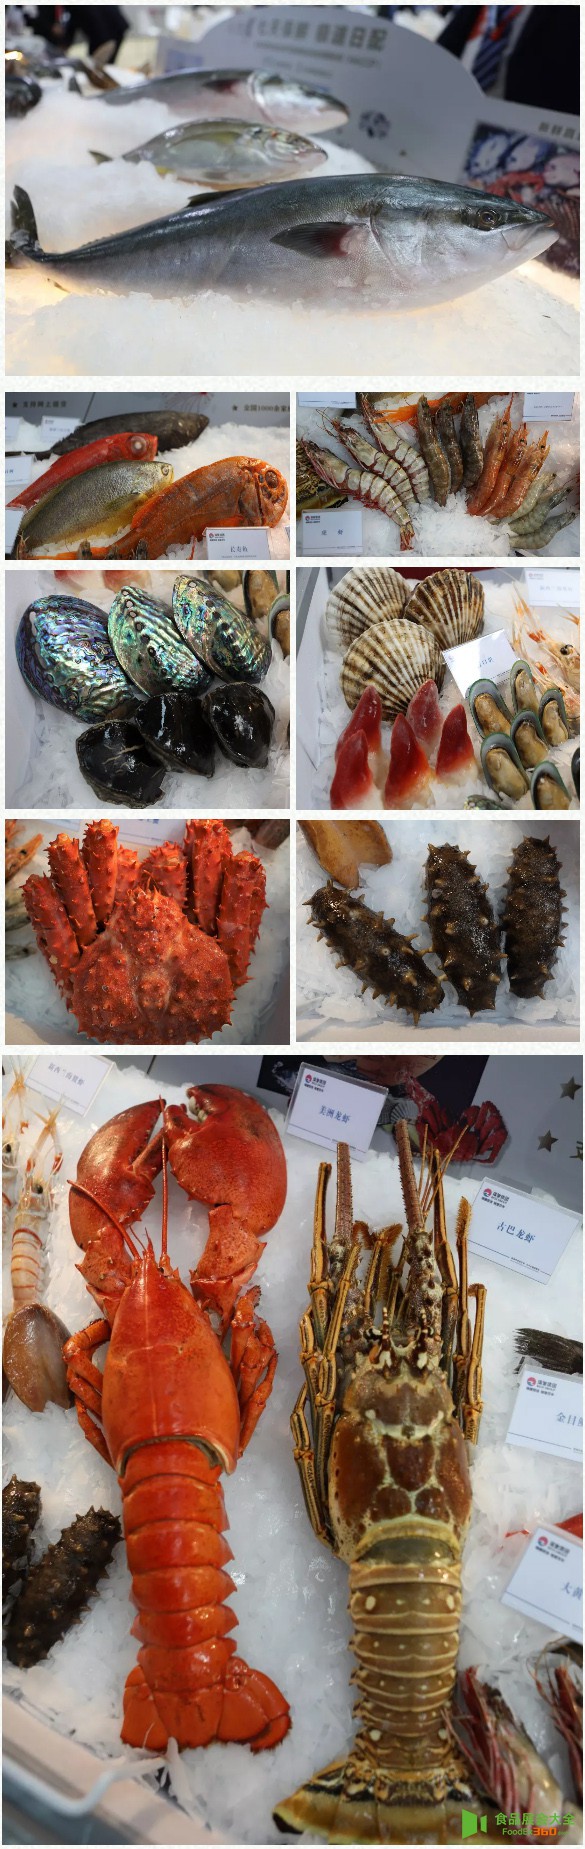 瑞驰集团青岛渔博会现场精彩直击食品展会大全网